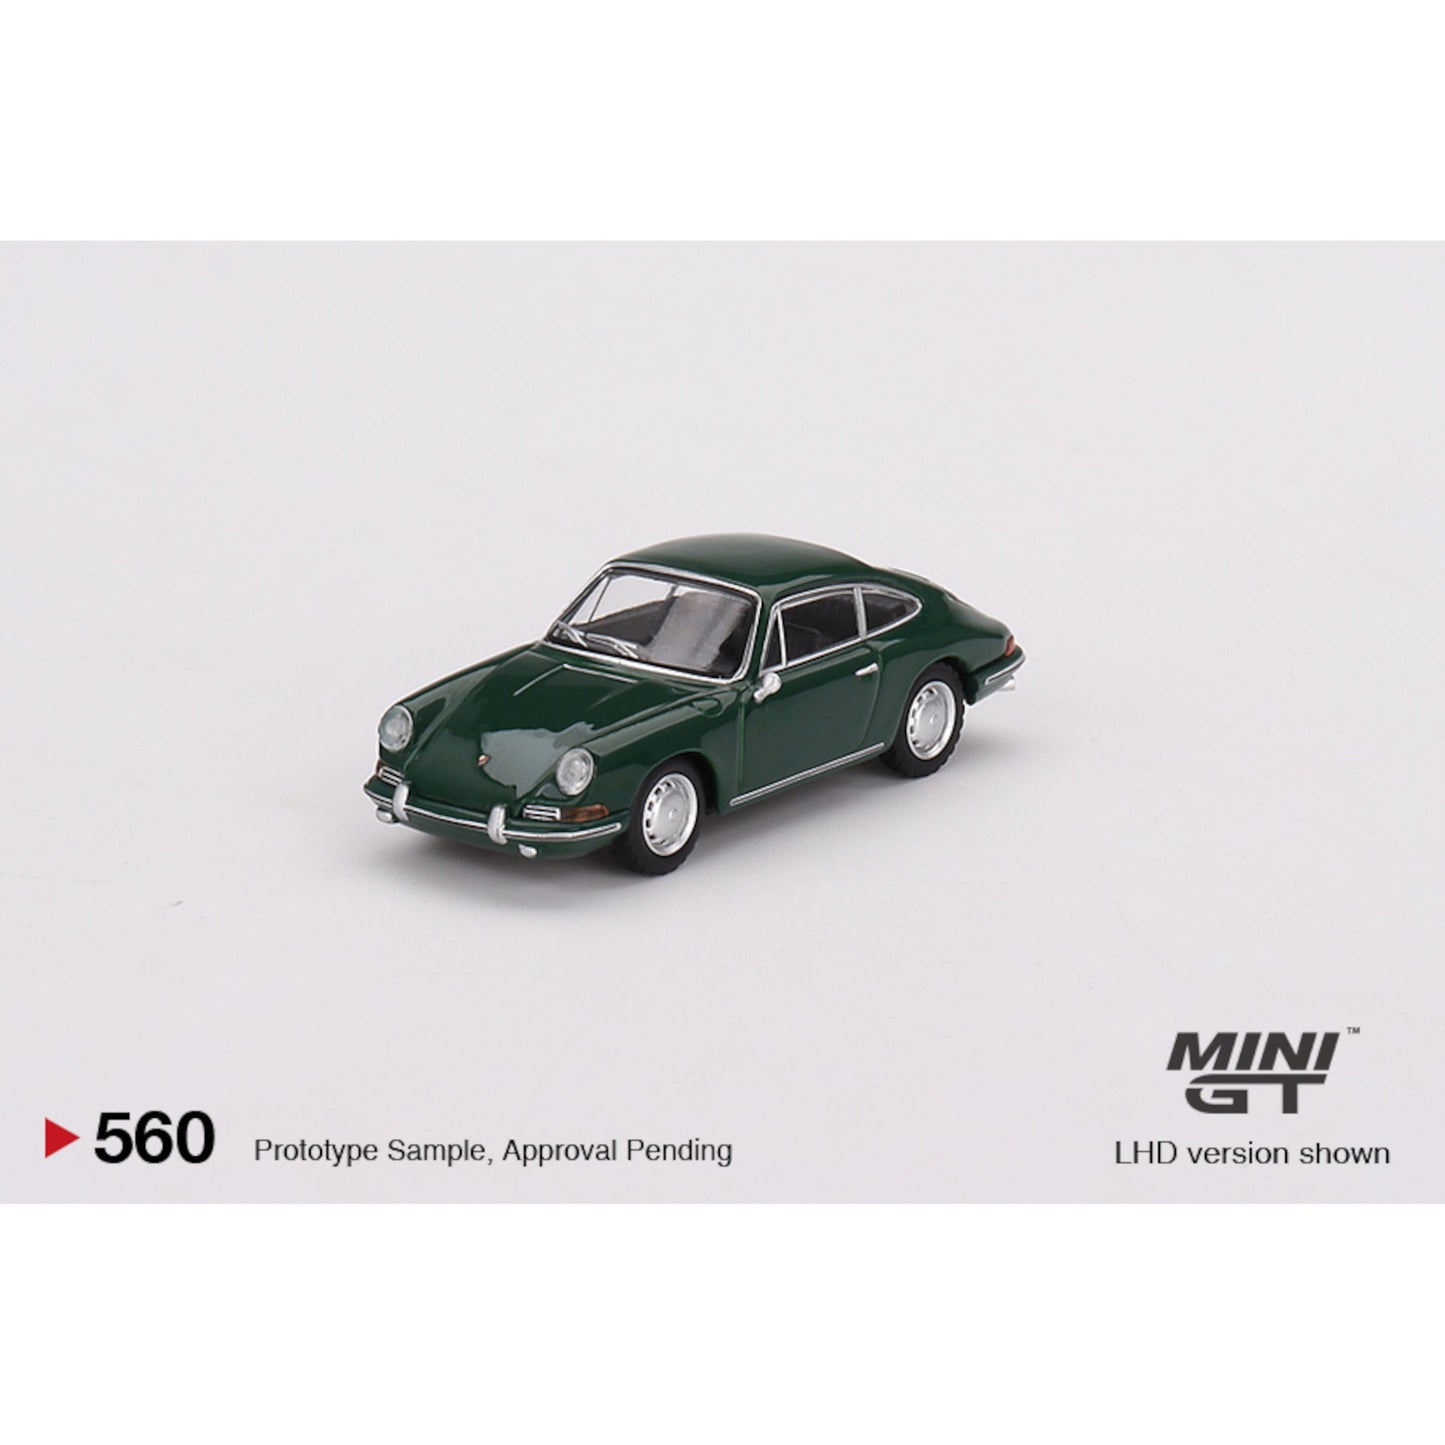 Porsche 911 1964 Irish Green LHD Mini GT 1/64 - MGT00560 - L